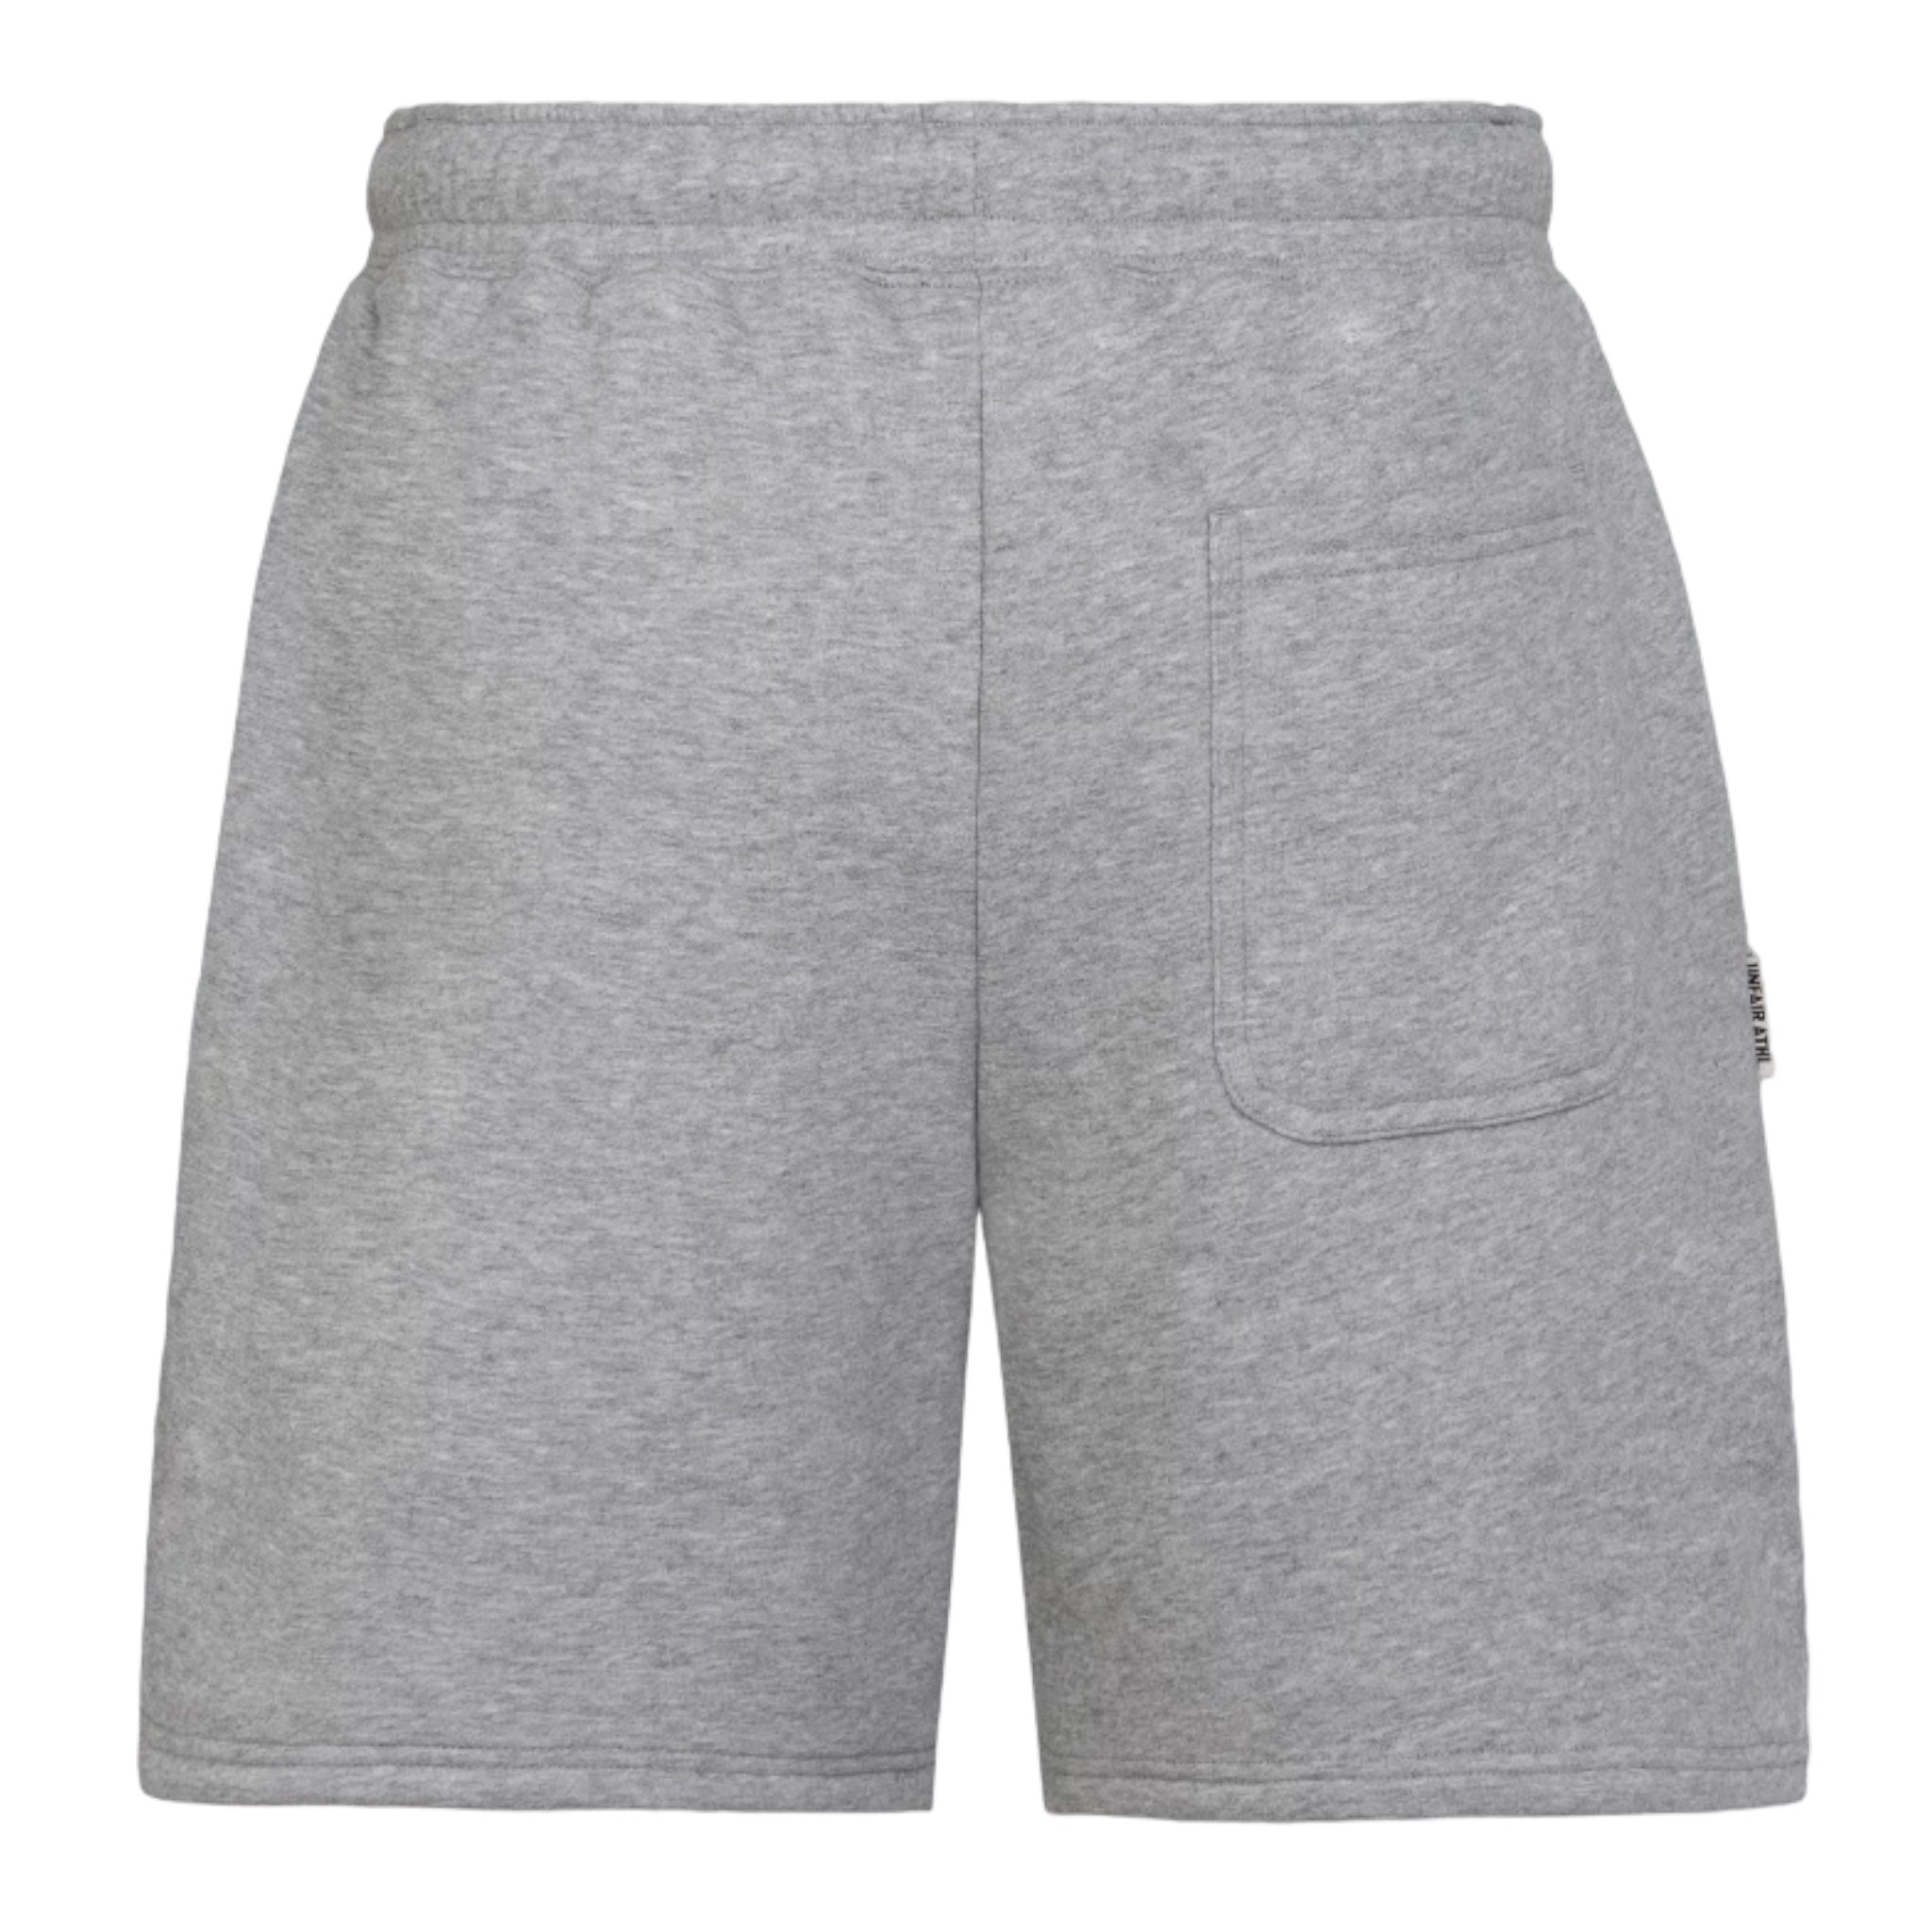 Velour Patch Shorts Grey - Unfair Athletics